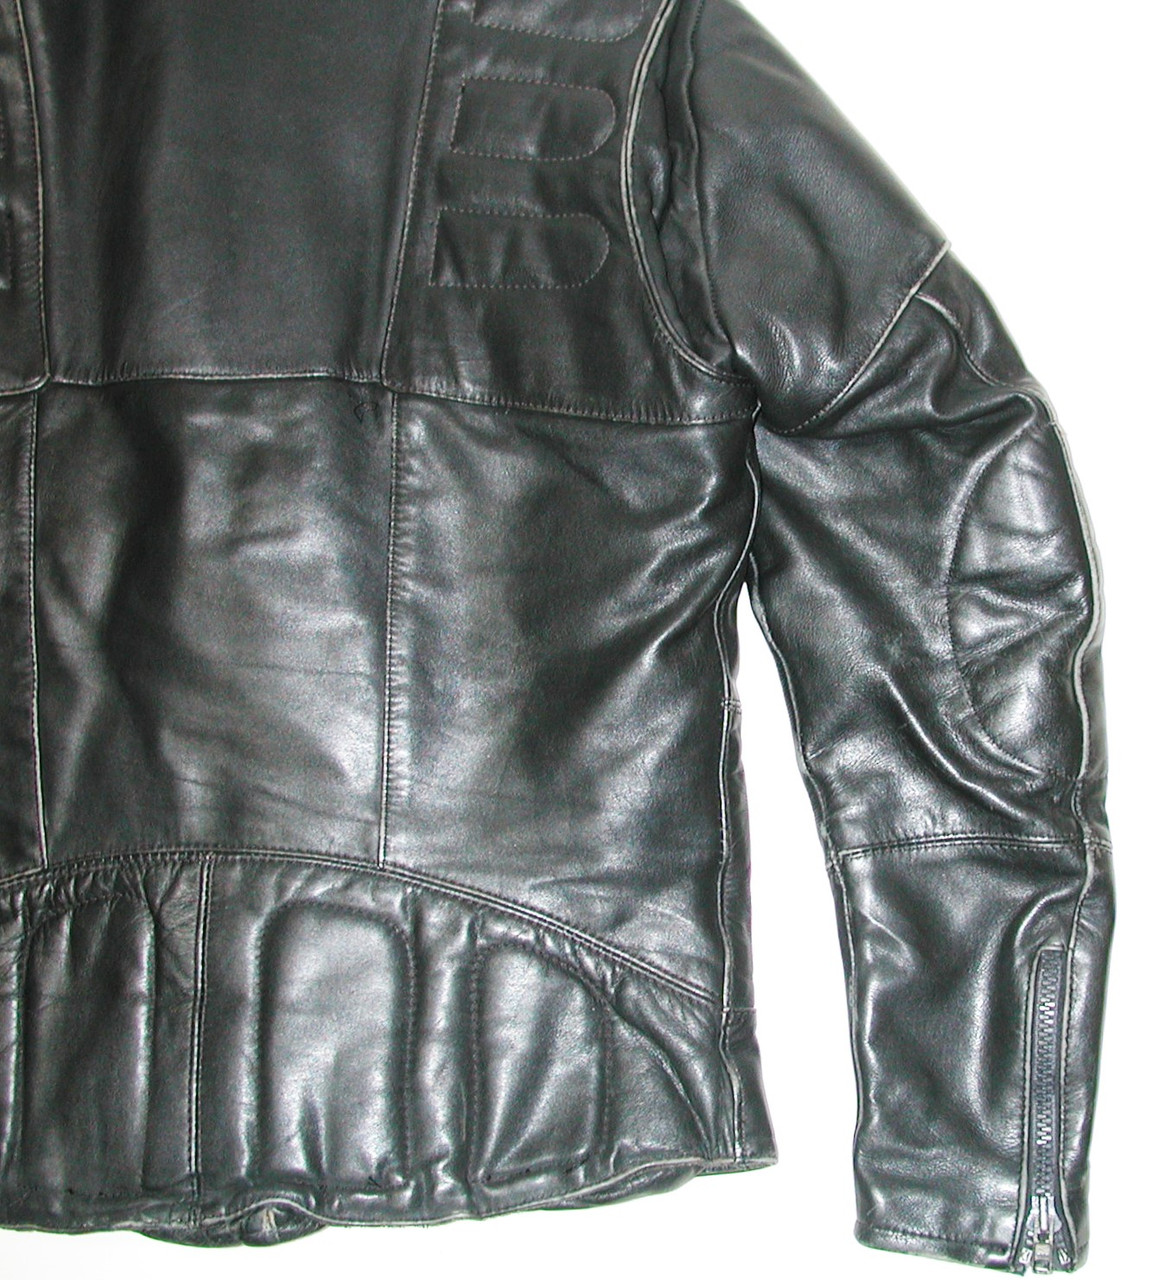 Vintage HARLEY DAVIDSON Men's Black Leather Motorcycle Biker Jacket, SZ: 44 Tall